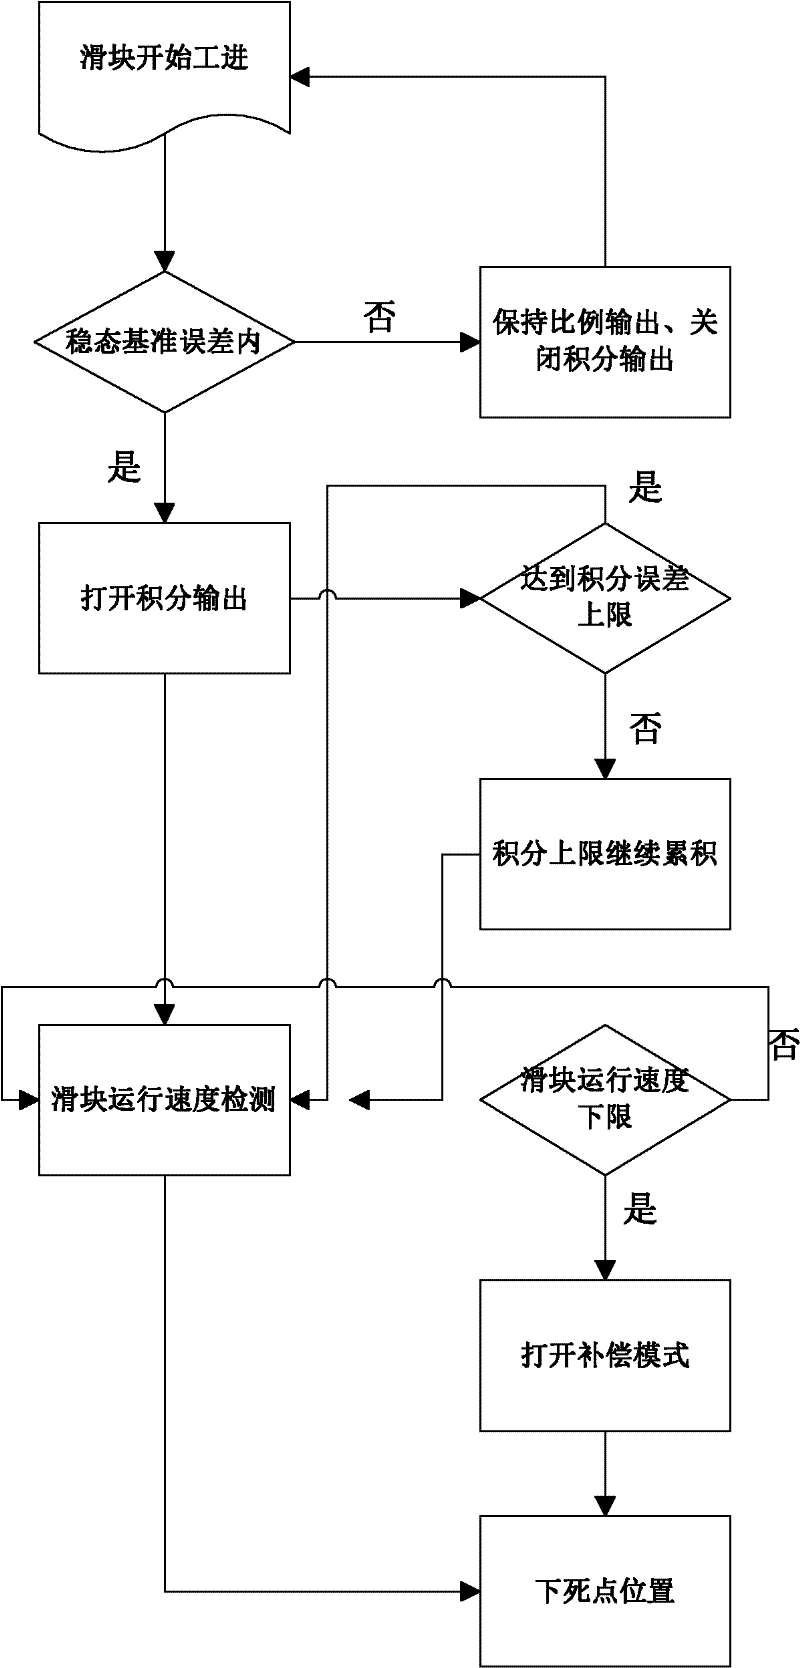 Method for controlling bottom dead center of slider of oil press